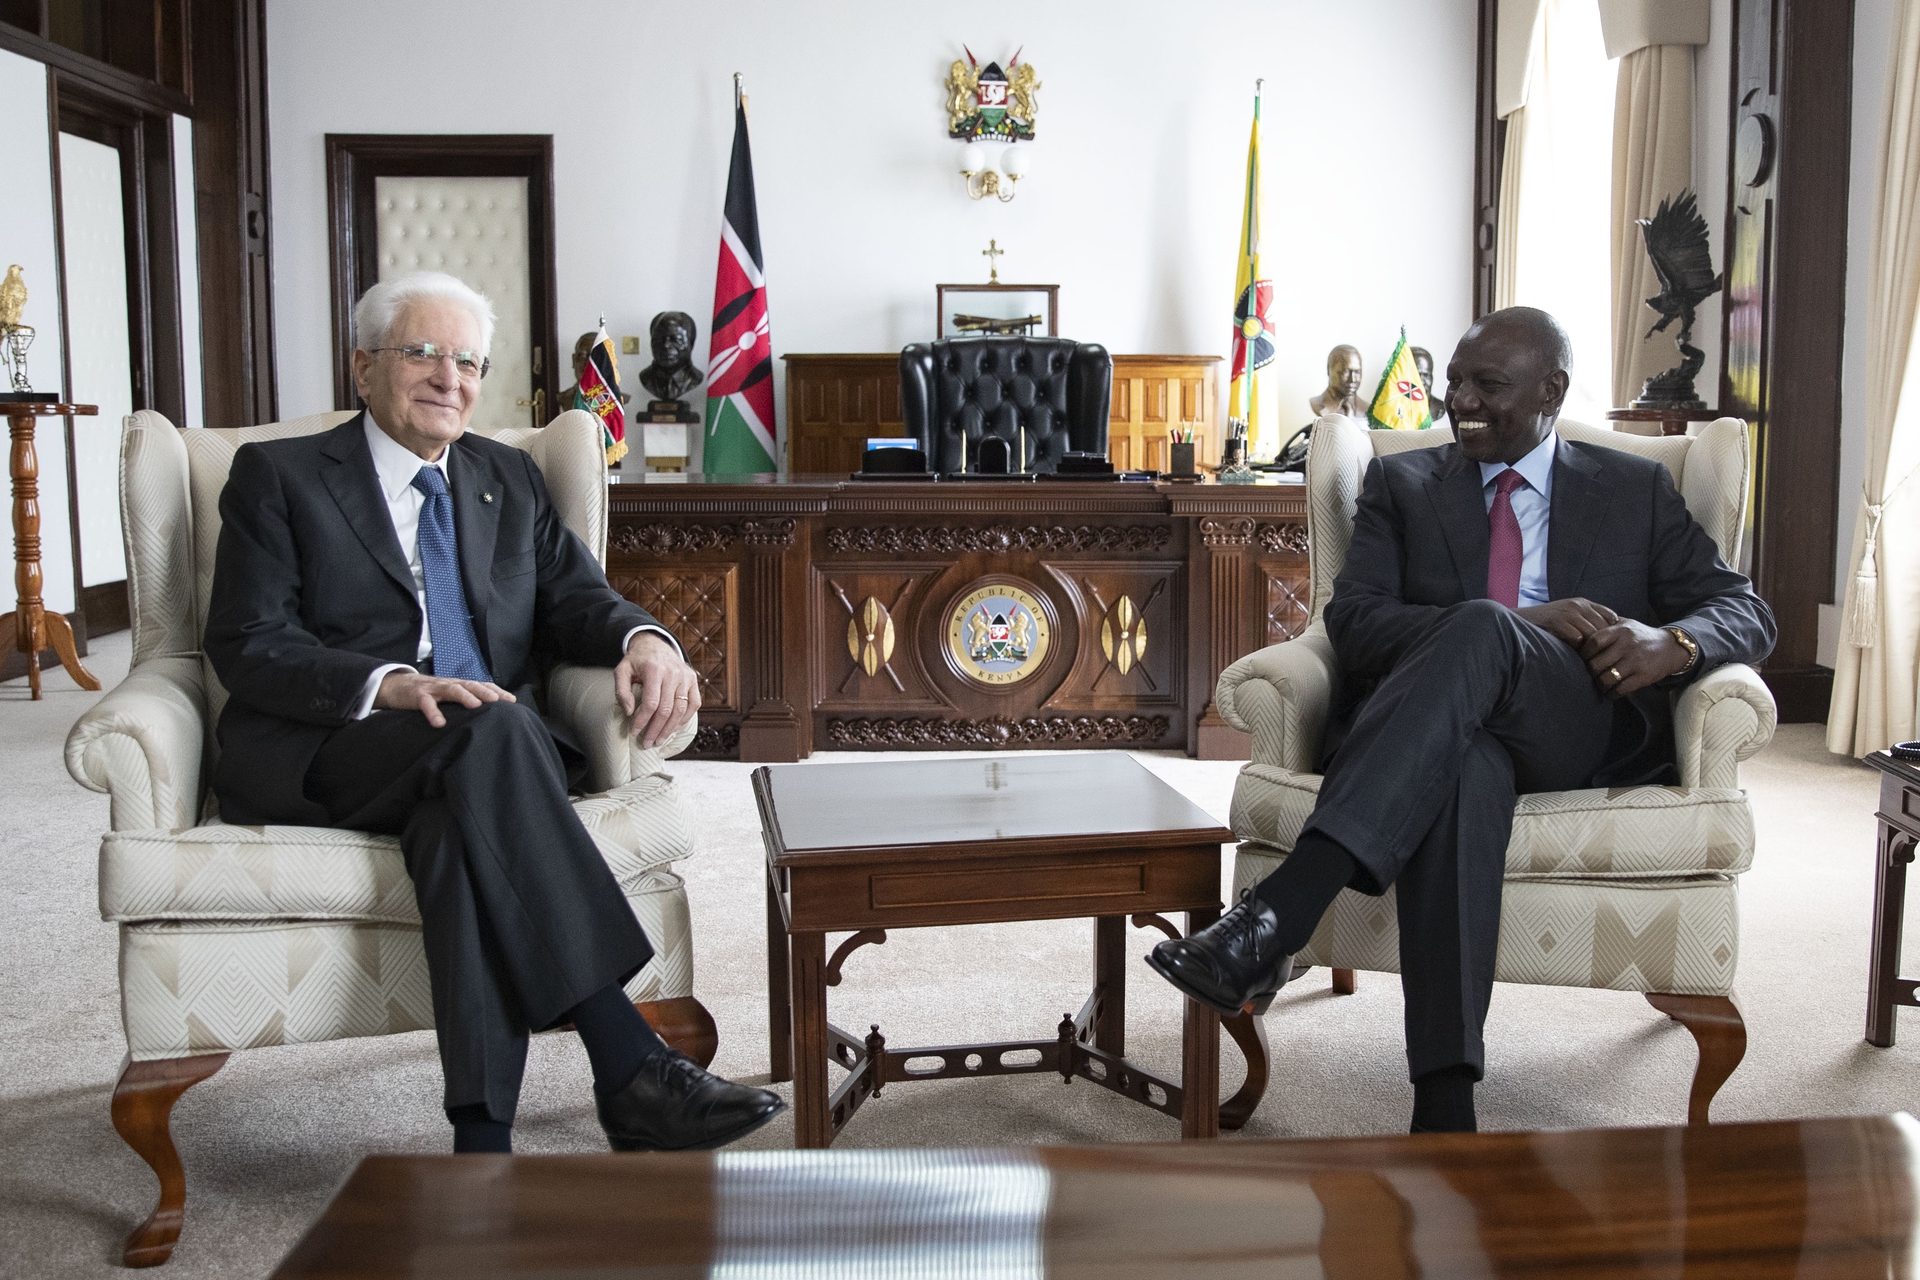 Il viaggio di stato di Mattarella in Kenya ha riscritto le priorità nazionali